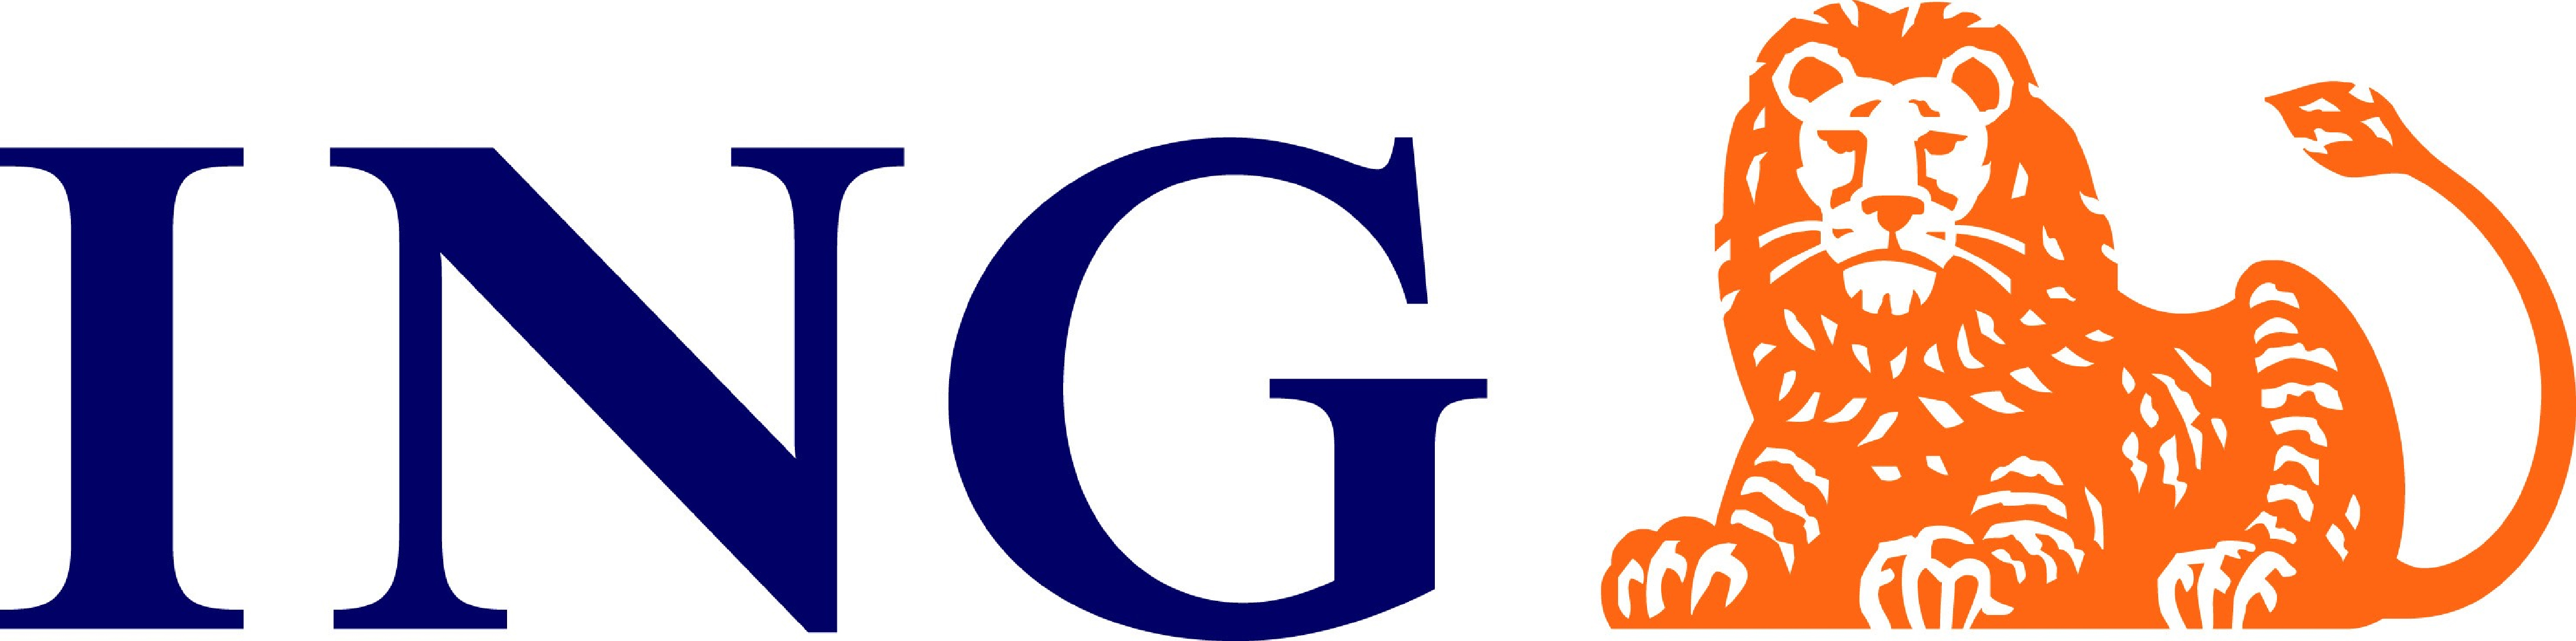 ING_logo.jpg